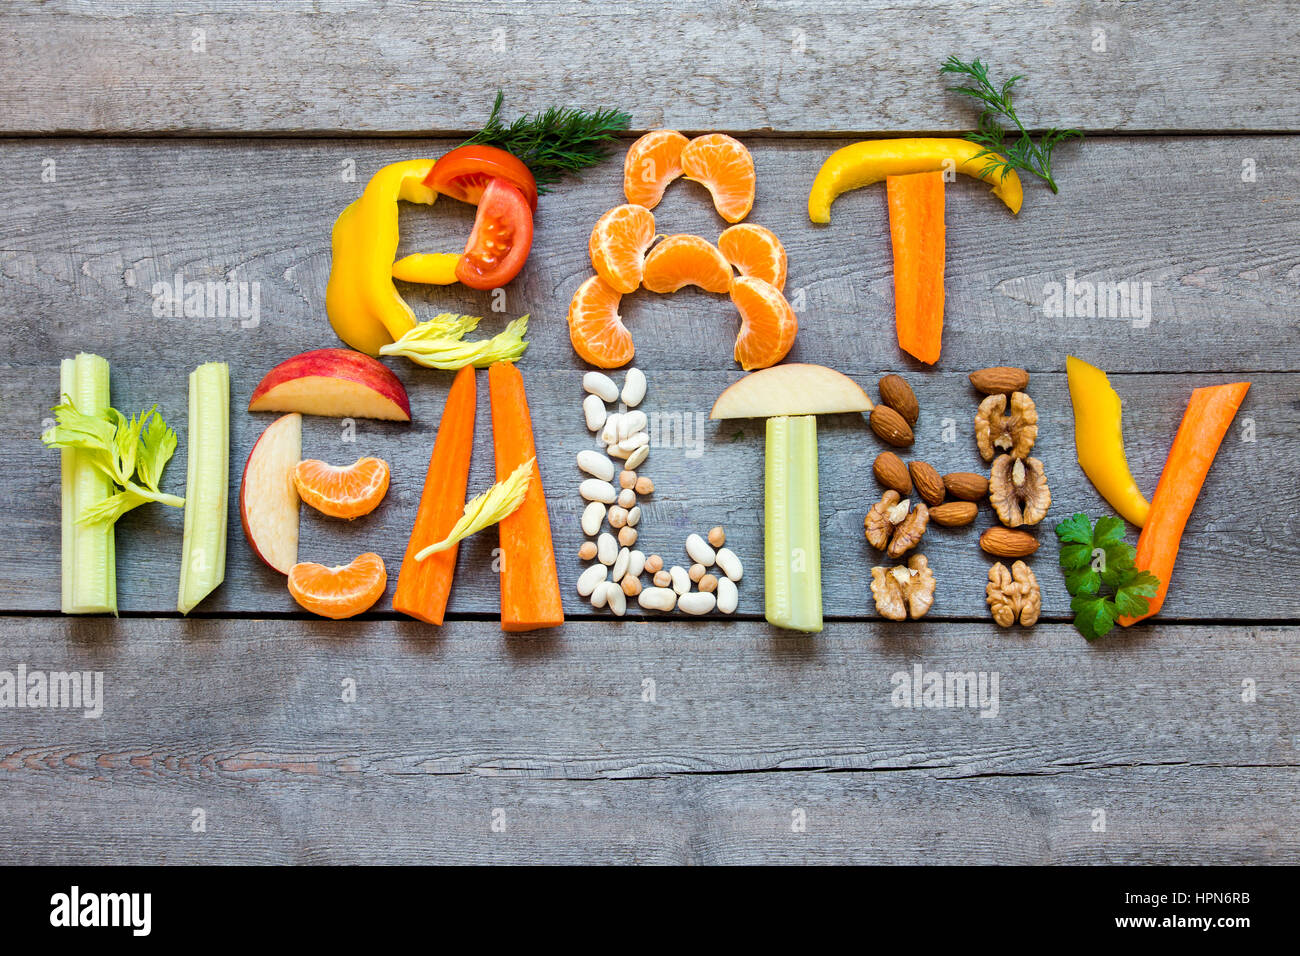 Mots "Manger sain" écrit avec légumes, fruits, noix et légumineuses sur fond de bois rustique, concept - ingrédients biologiques pour mourir végétalien sain Banque D'Images